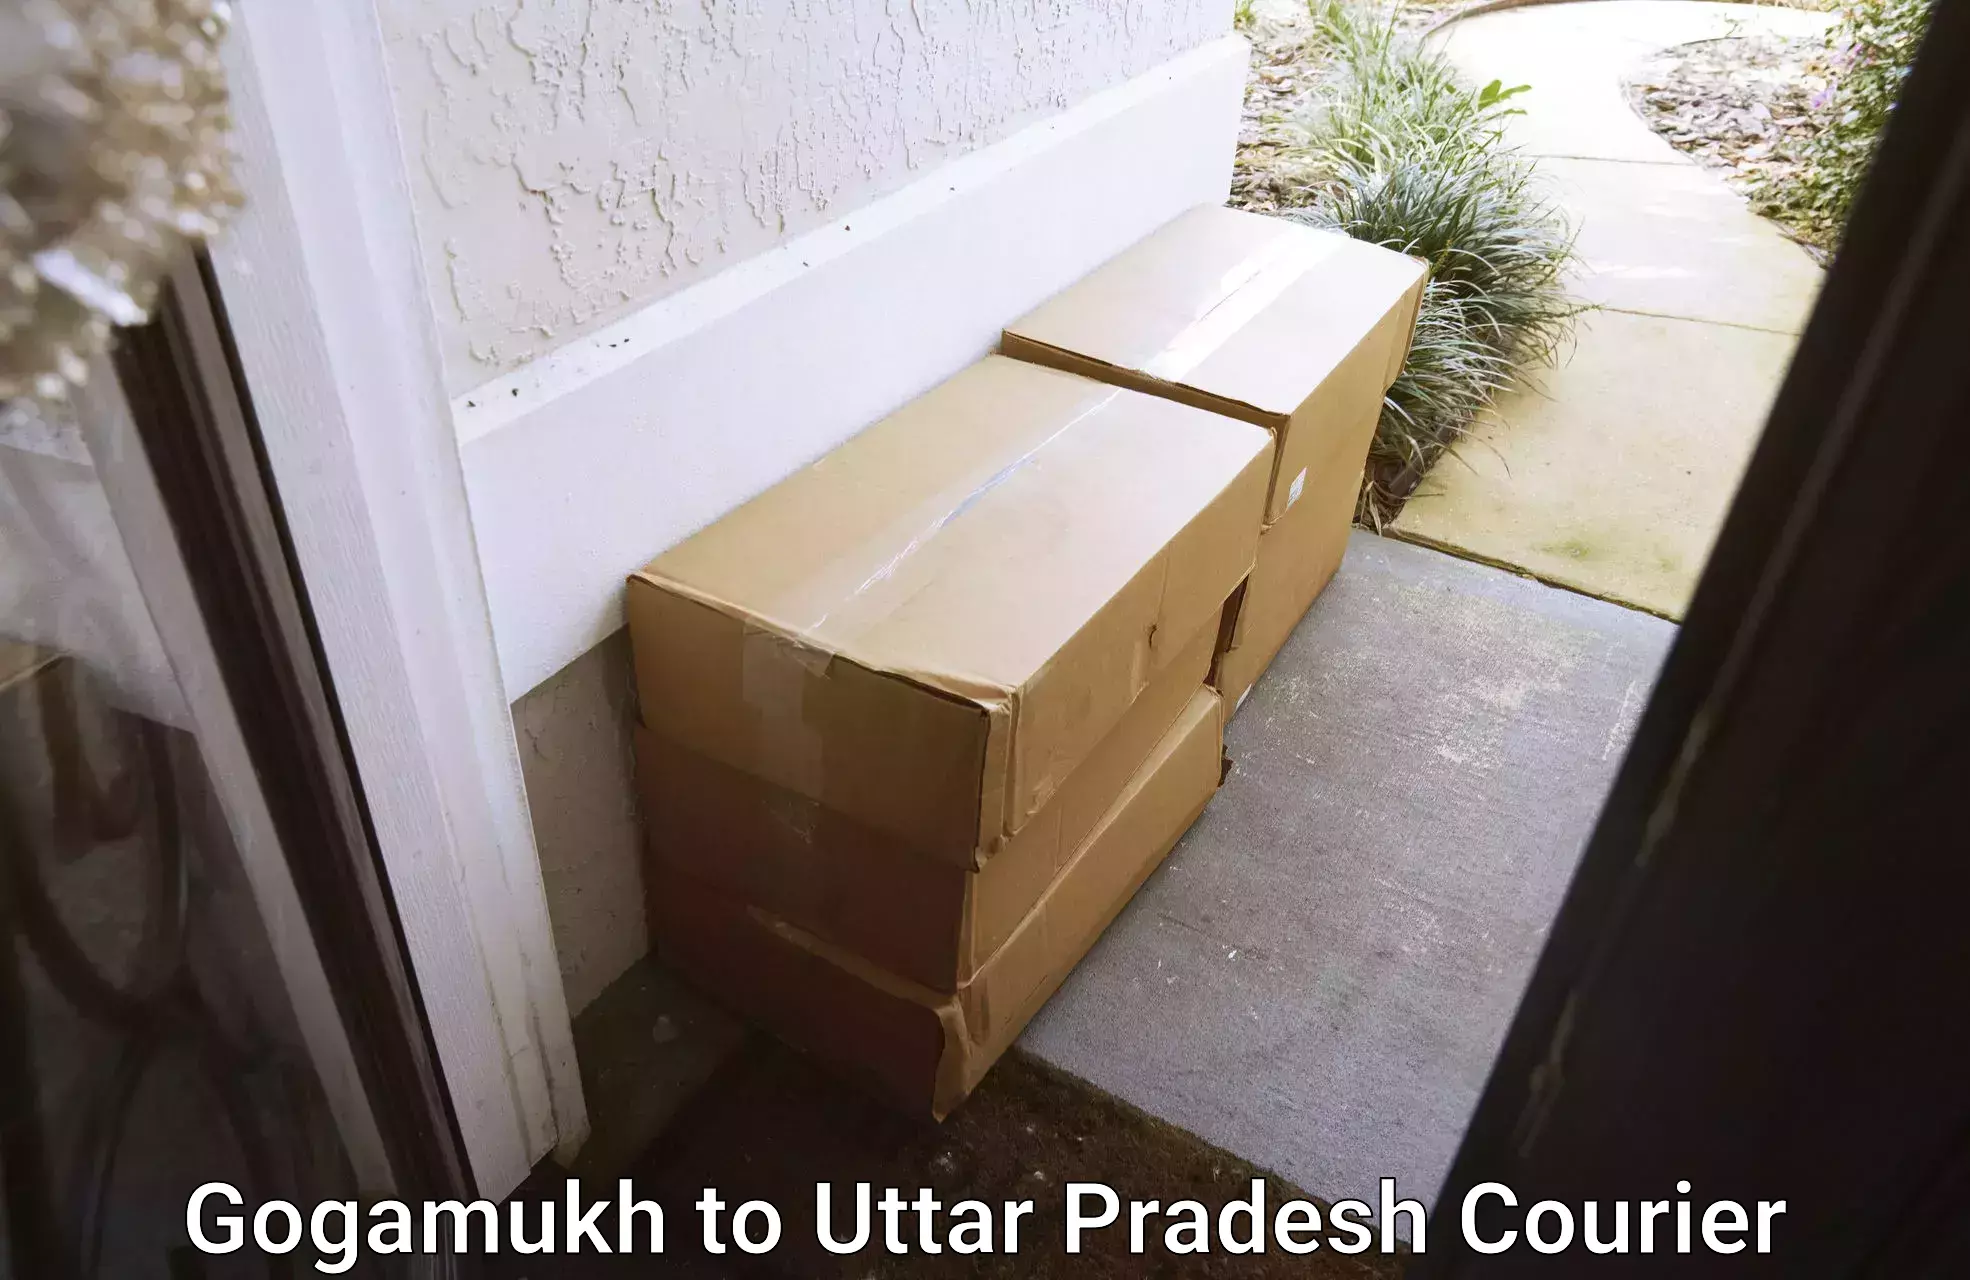 Parcel delivery automation Gogamukh to Uttar Pradesh